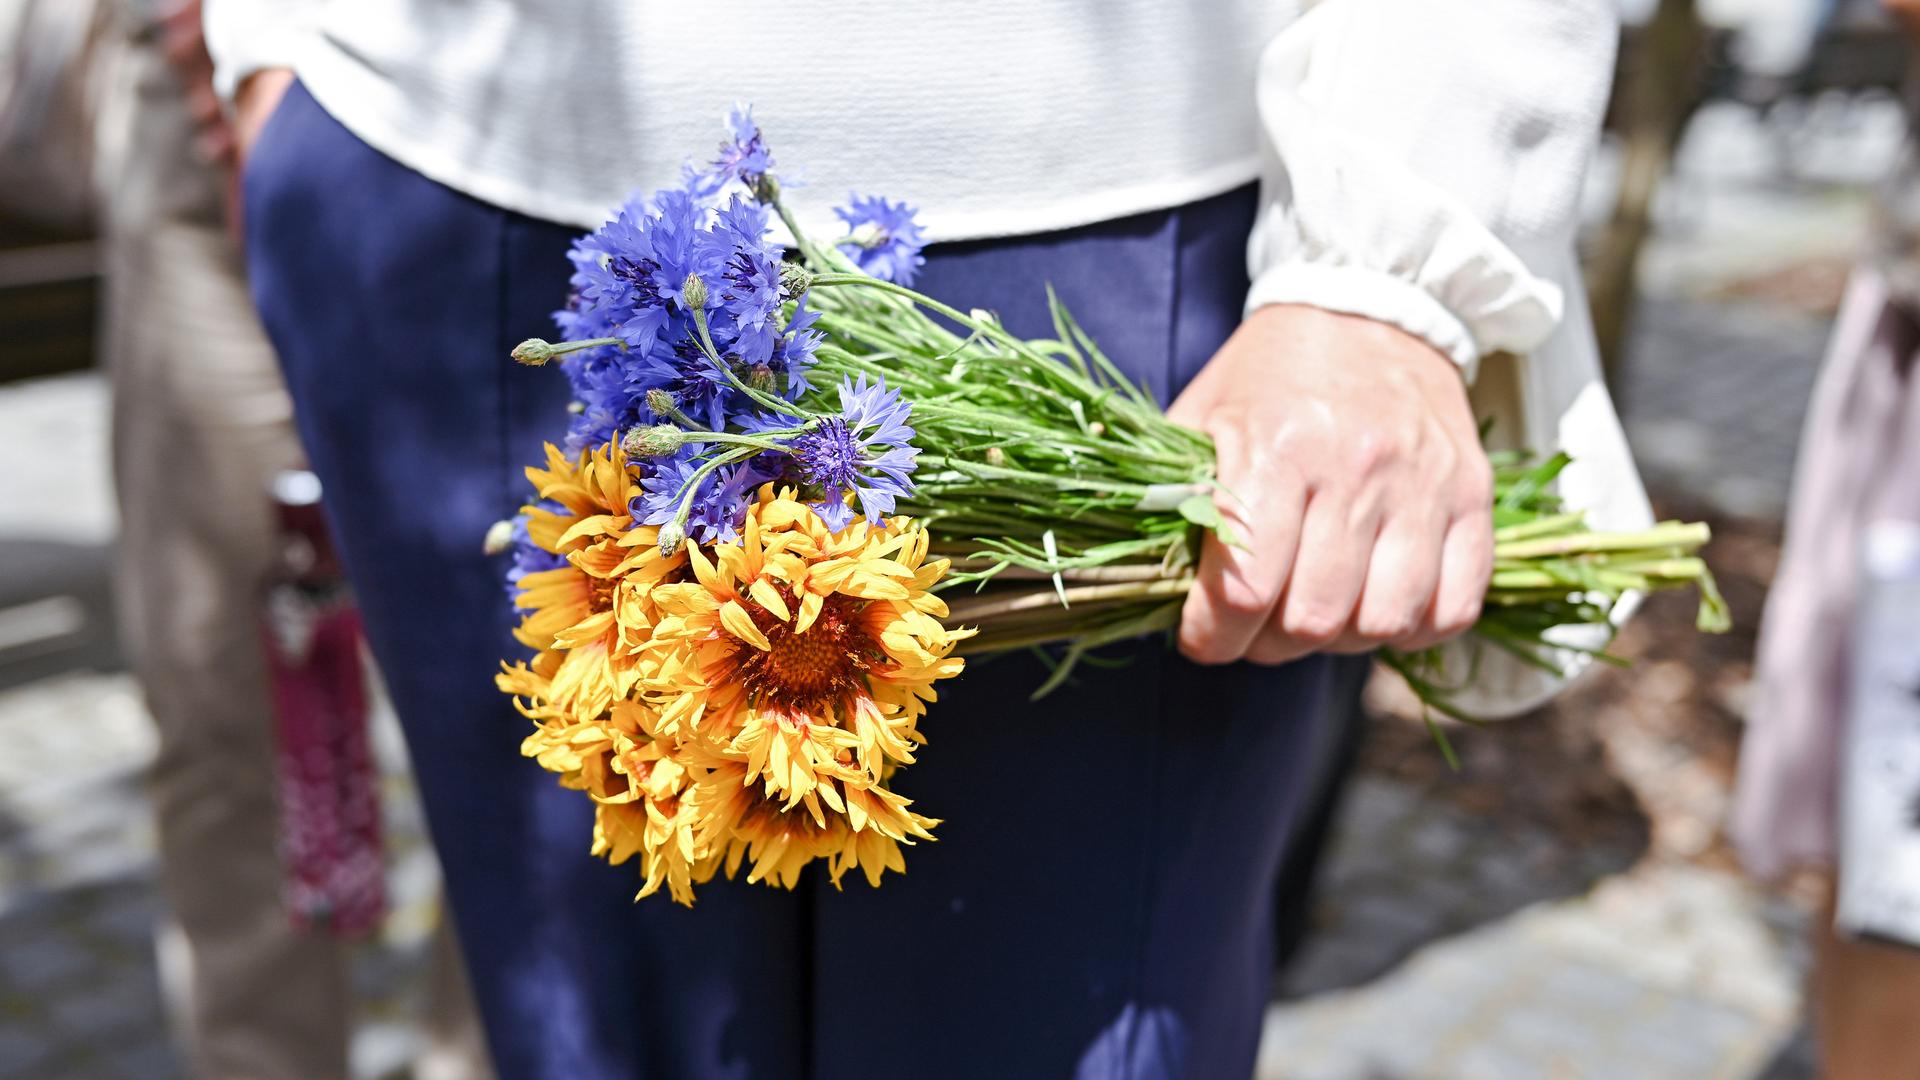 Die Hände einer Frau halten einen Strauß aus Blumen in den ukrainischen Farben gelb und blau.